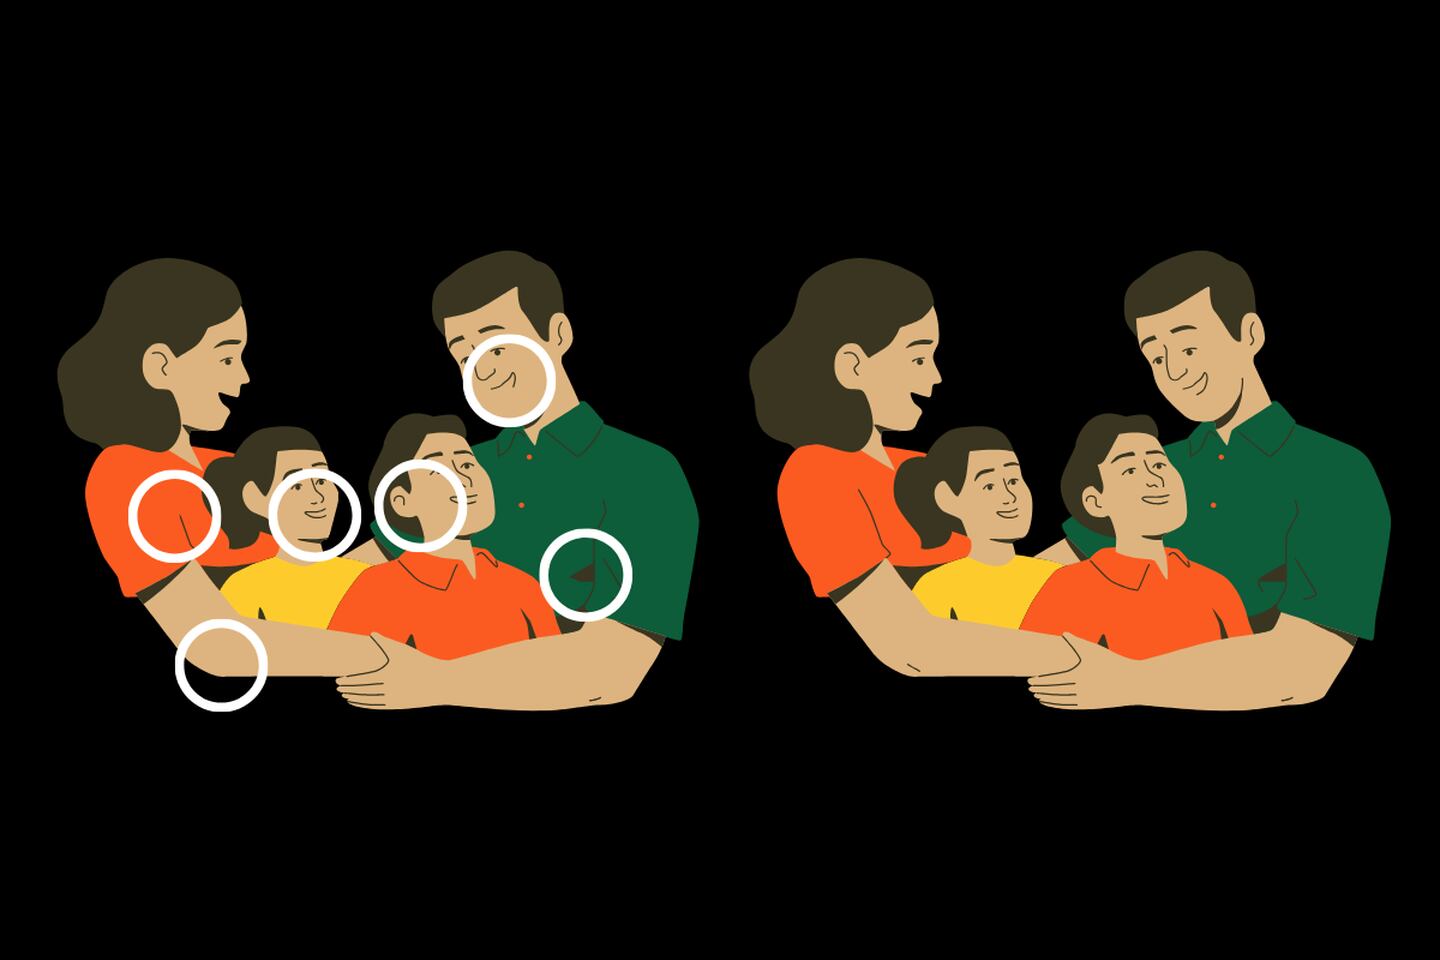 En este test visual hay dos familias que parecen iguales, pero tienen seis diferencias.